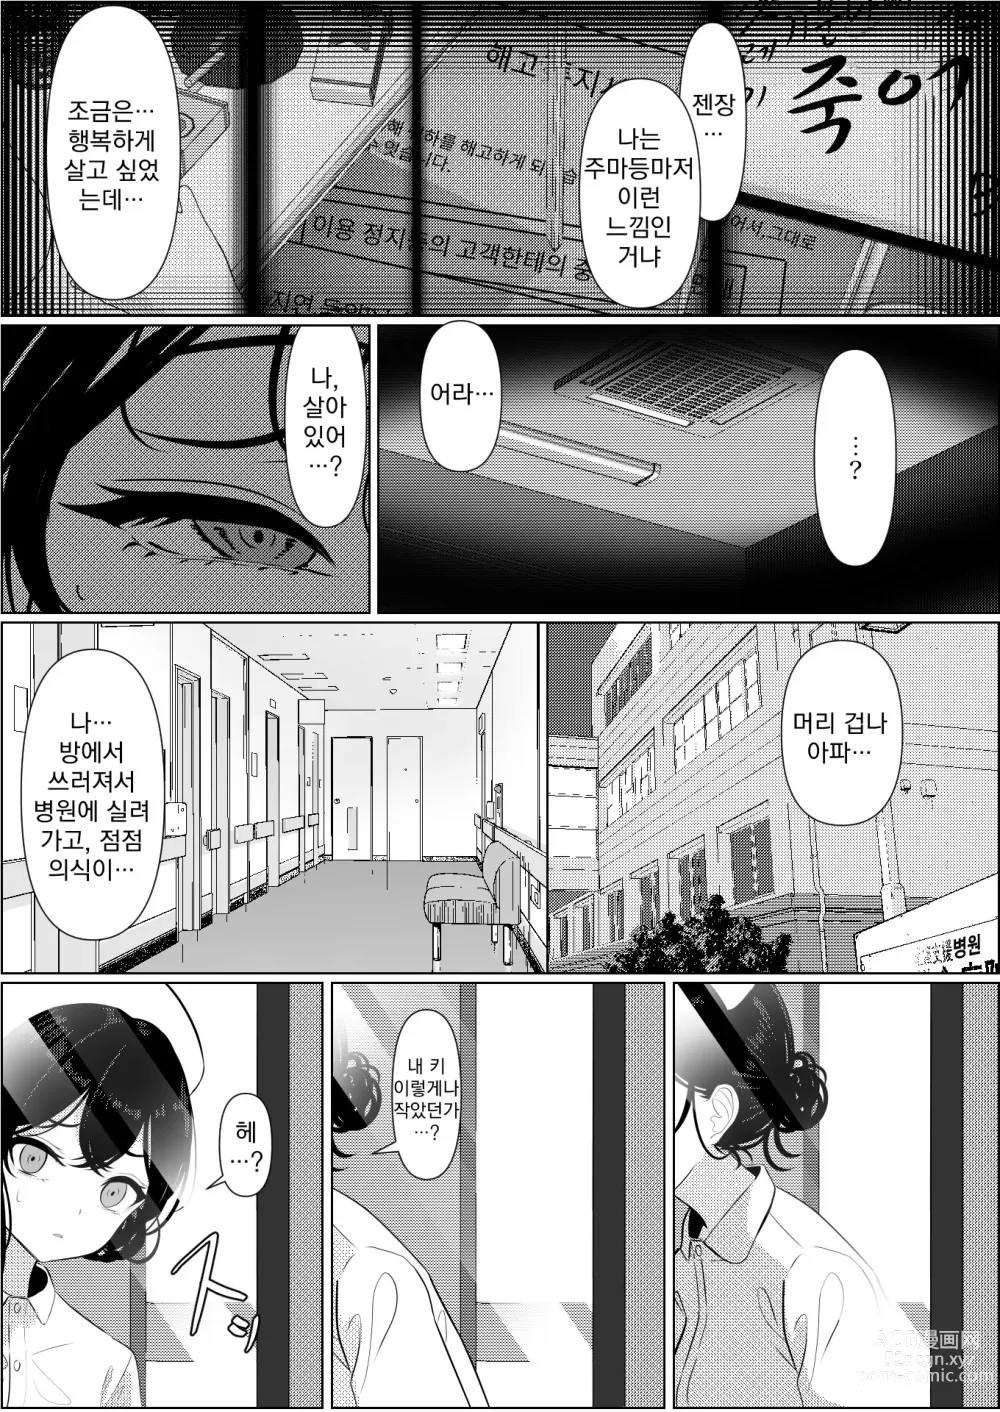 Page 5 of doujinshi 외톨이로 죽은 내가 미소녀 간호사가 된 이야기